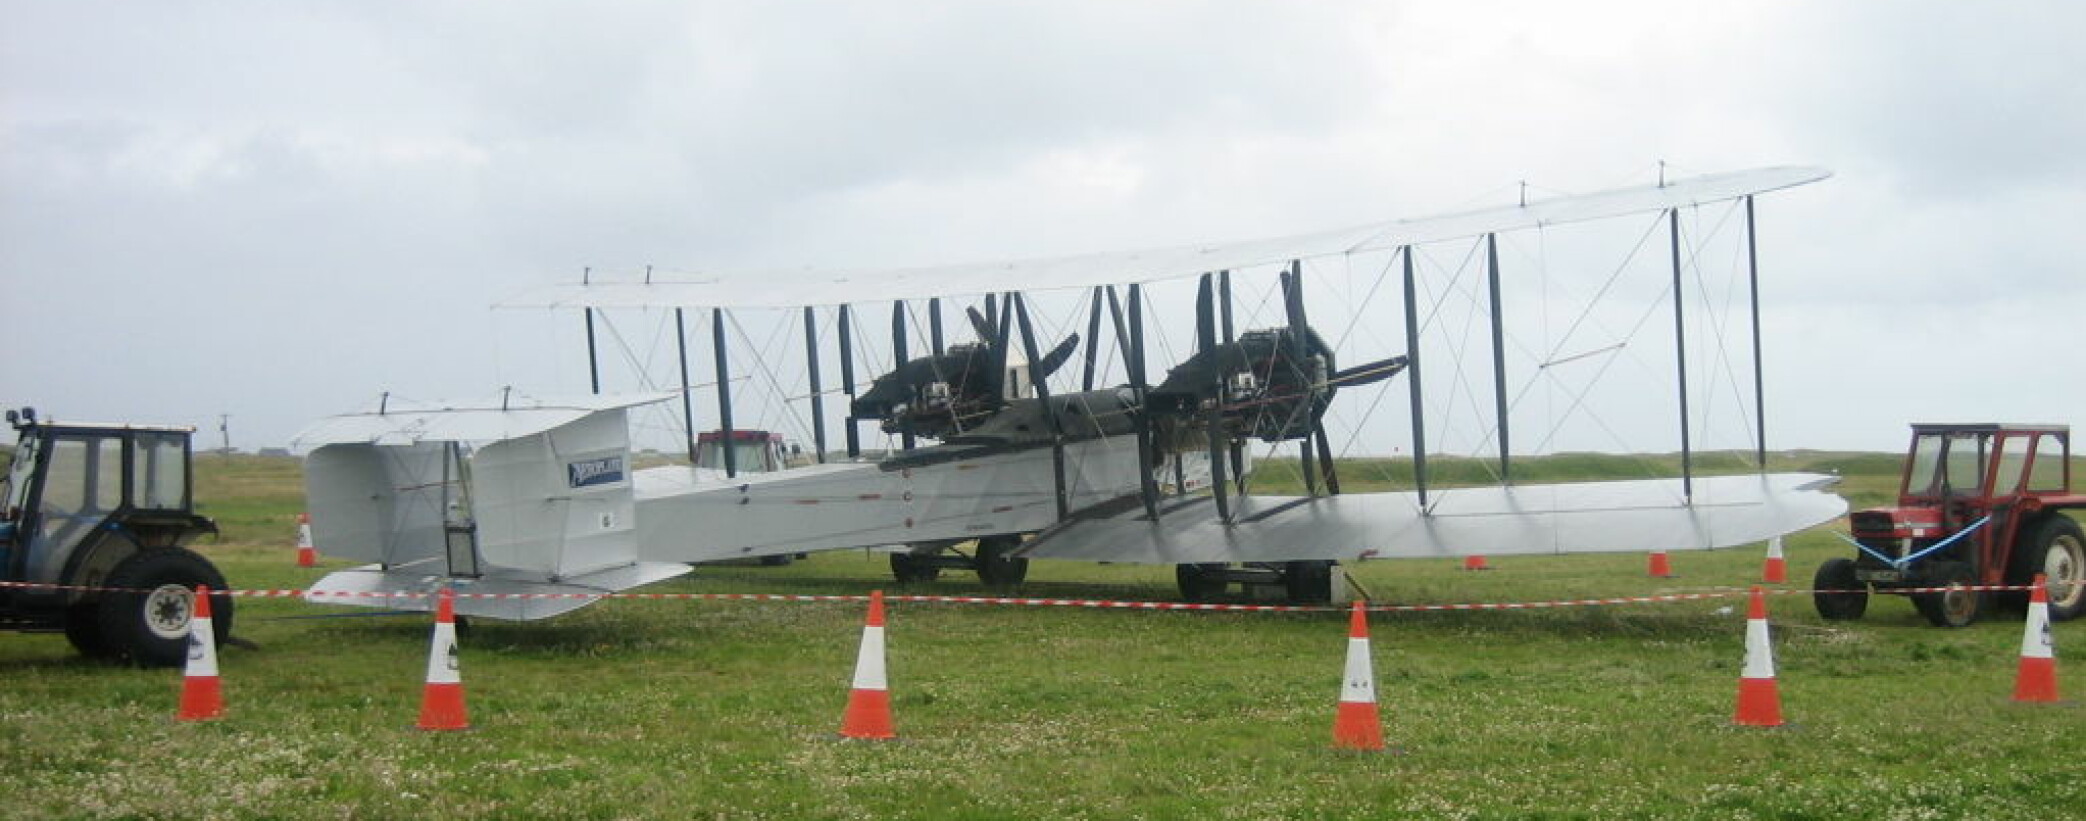 <b>KOPI</b> En replika av Vickers Vimy. Flyet som Alcock og Brown brukte som verdens første mennesker fly over Atlanterhavet.